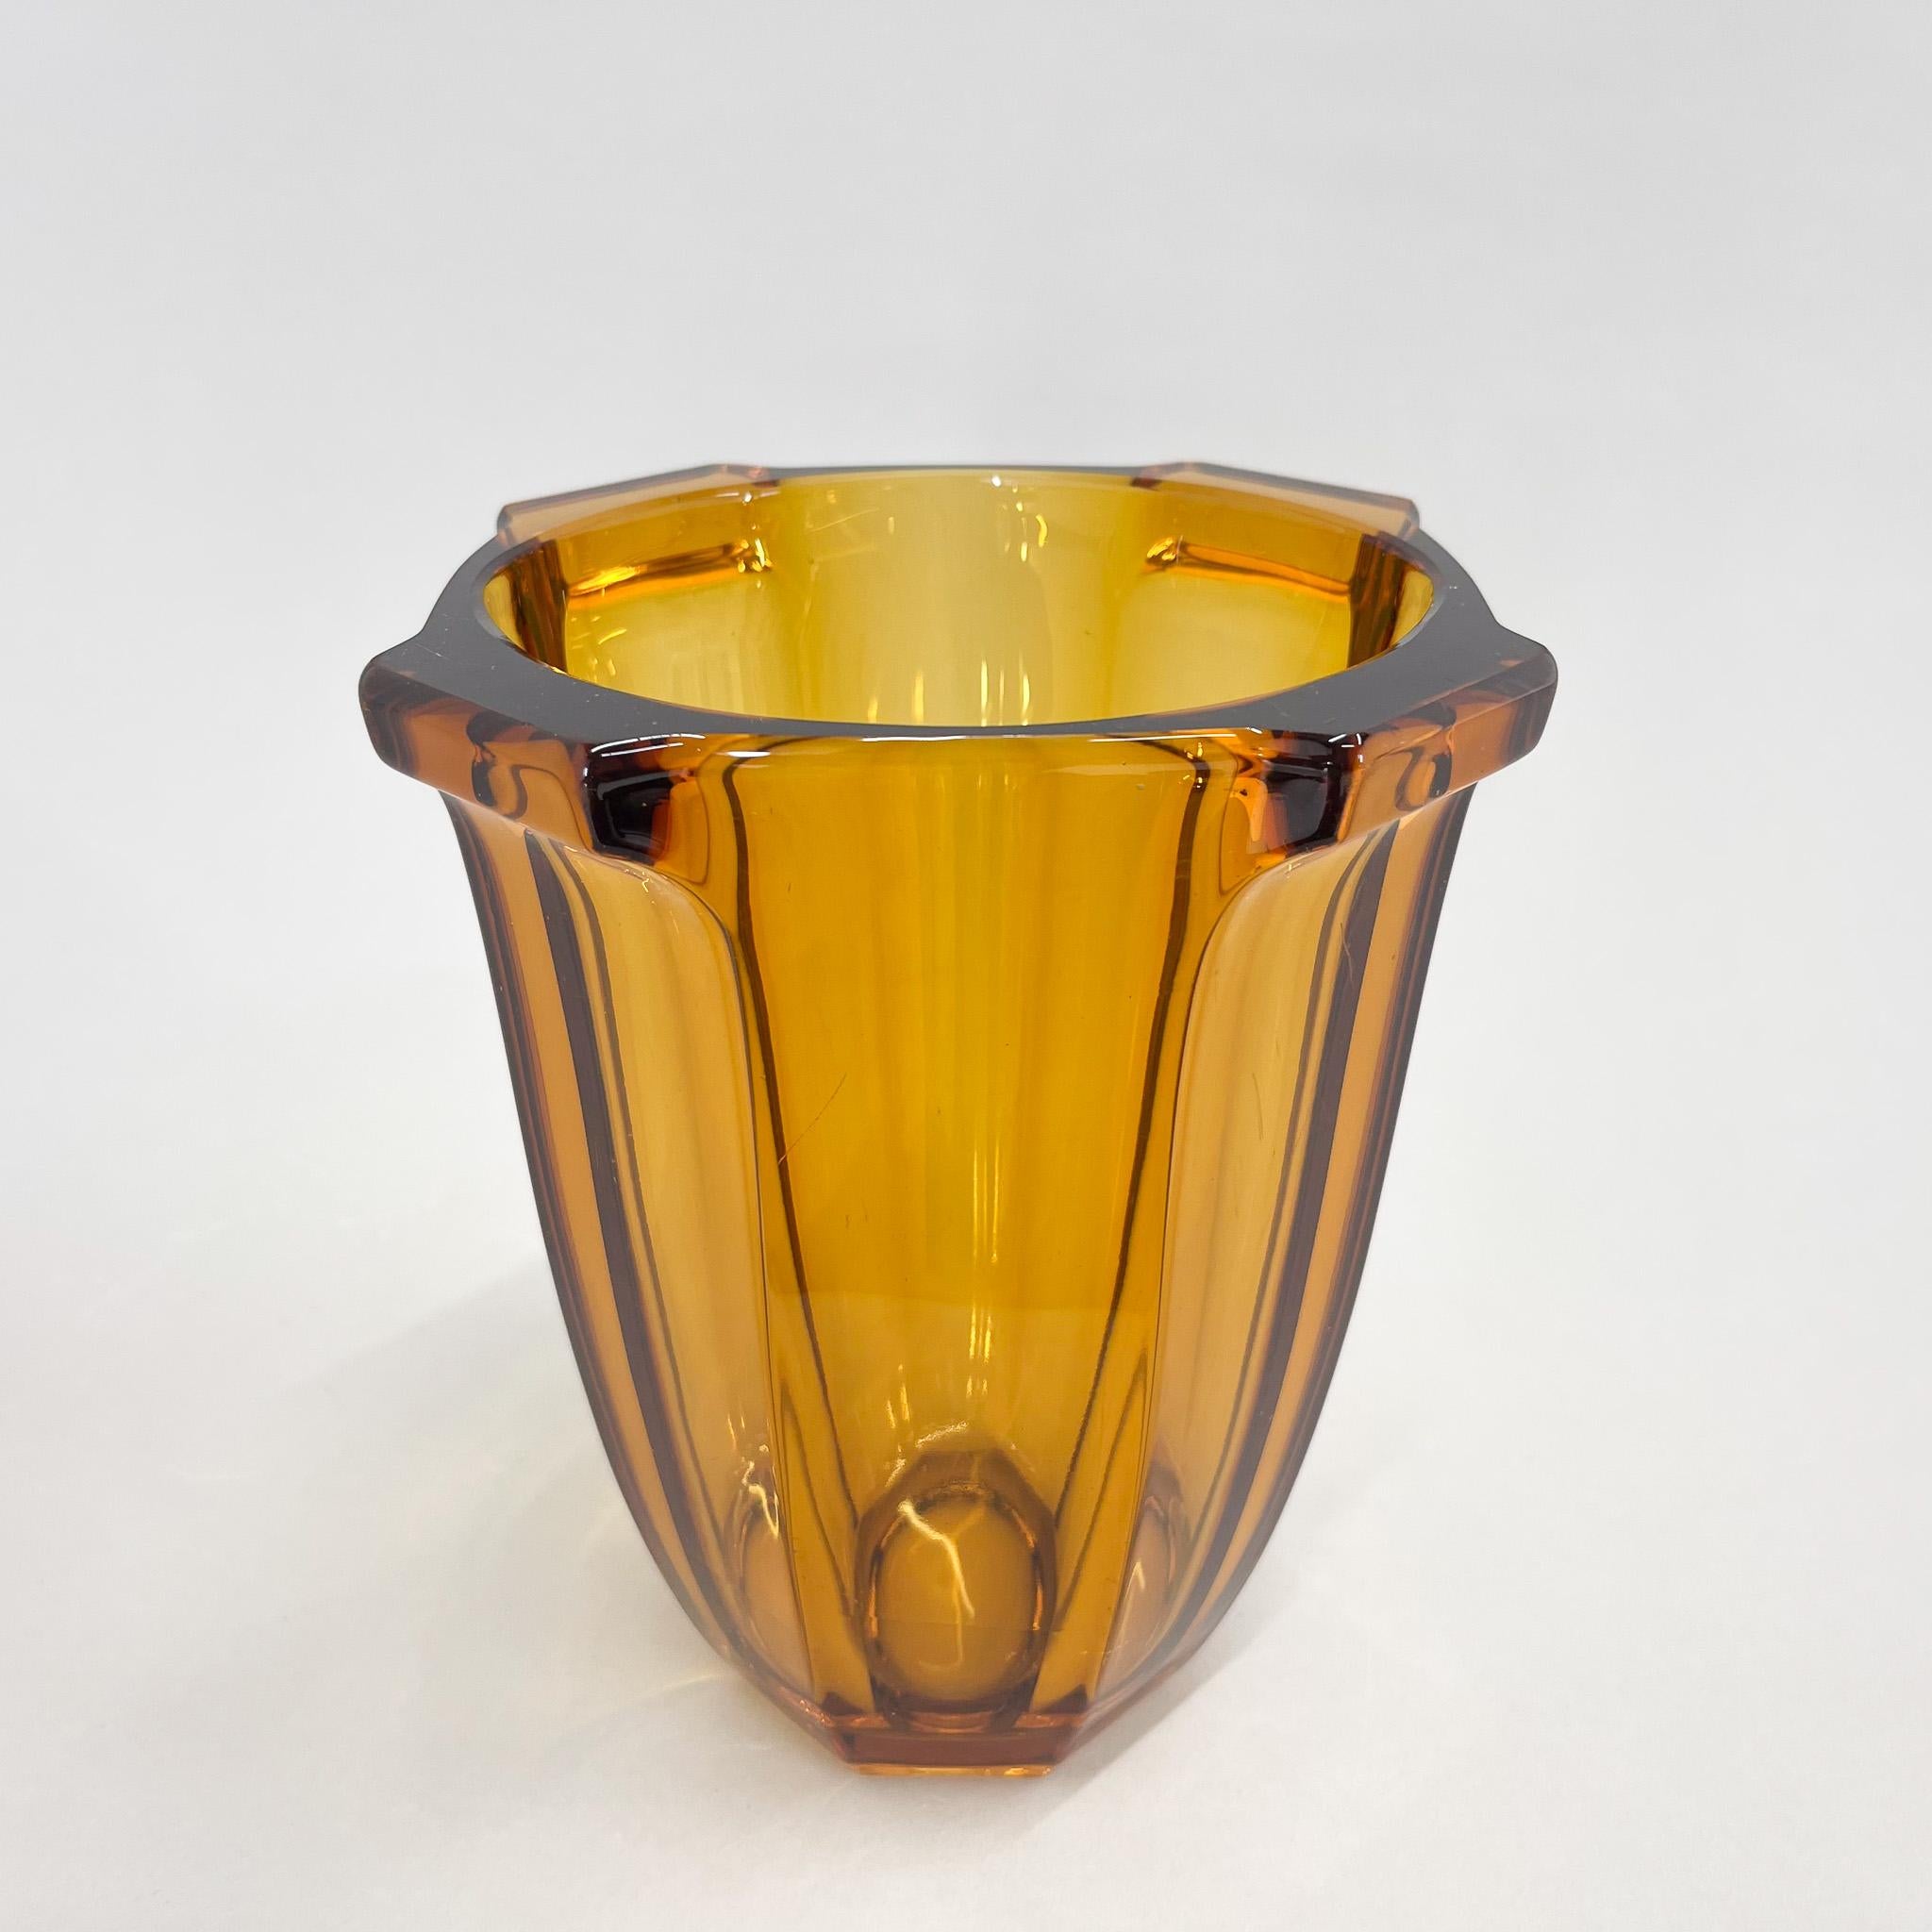 Vase Art déco en verre ambré conçu par Rudolf Schrotter dans les années 1930. Fabriqué par la verrerie Rudolfova Hut dans l'ancienne Tchécoslovaquie.